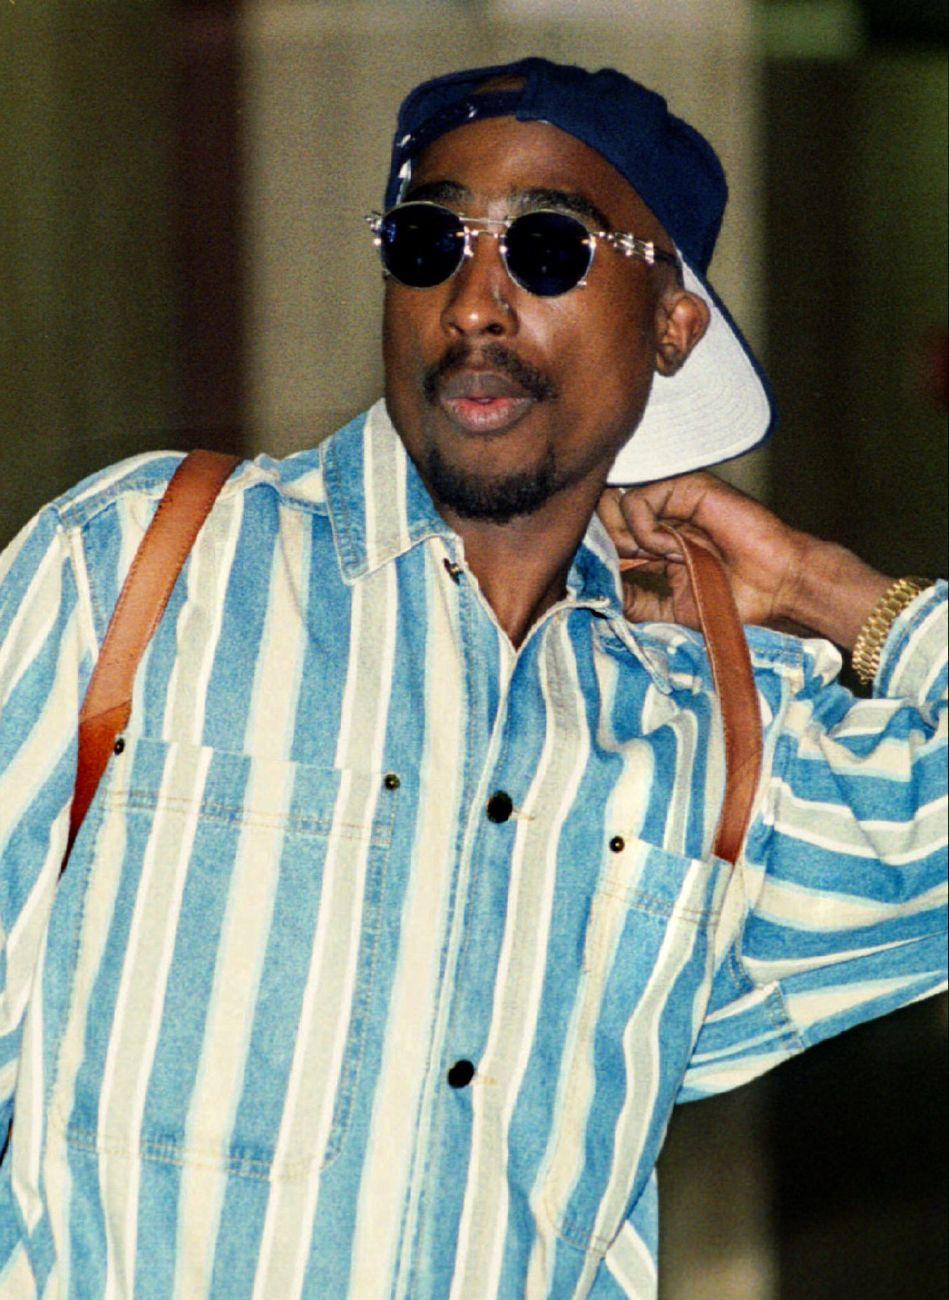 A világhírű rapper, Tupac Shakur 1994-ben, két évvel a meggyilkolása előtt. Se szeri, se száma a félrevezető megfogalmazásoknak